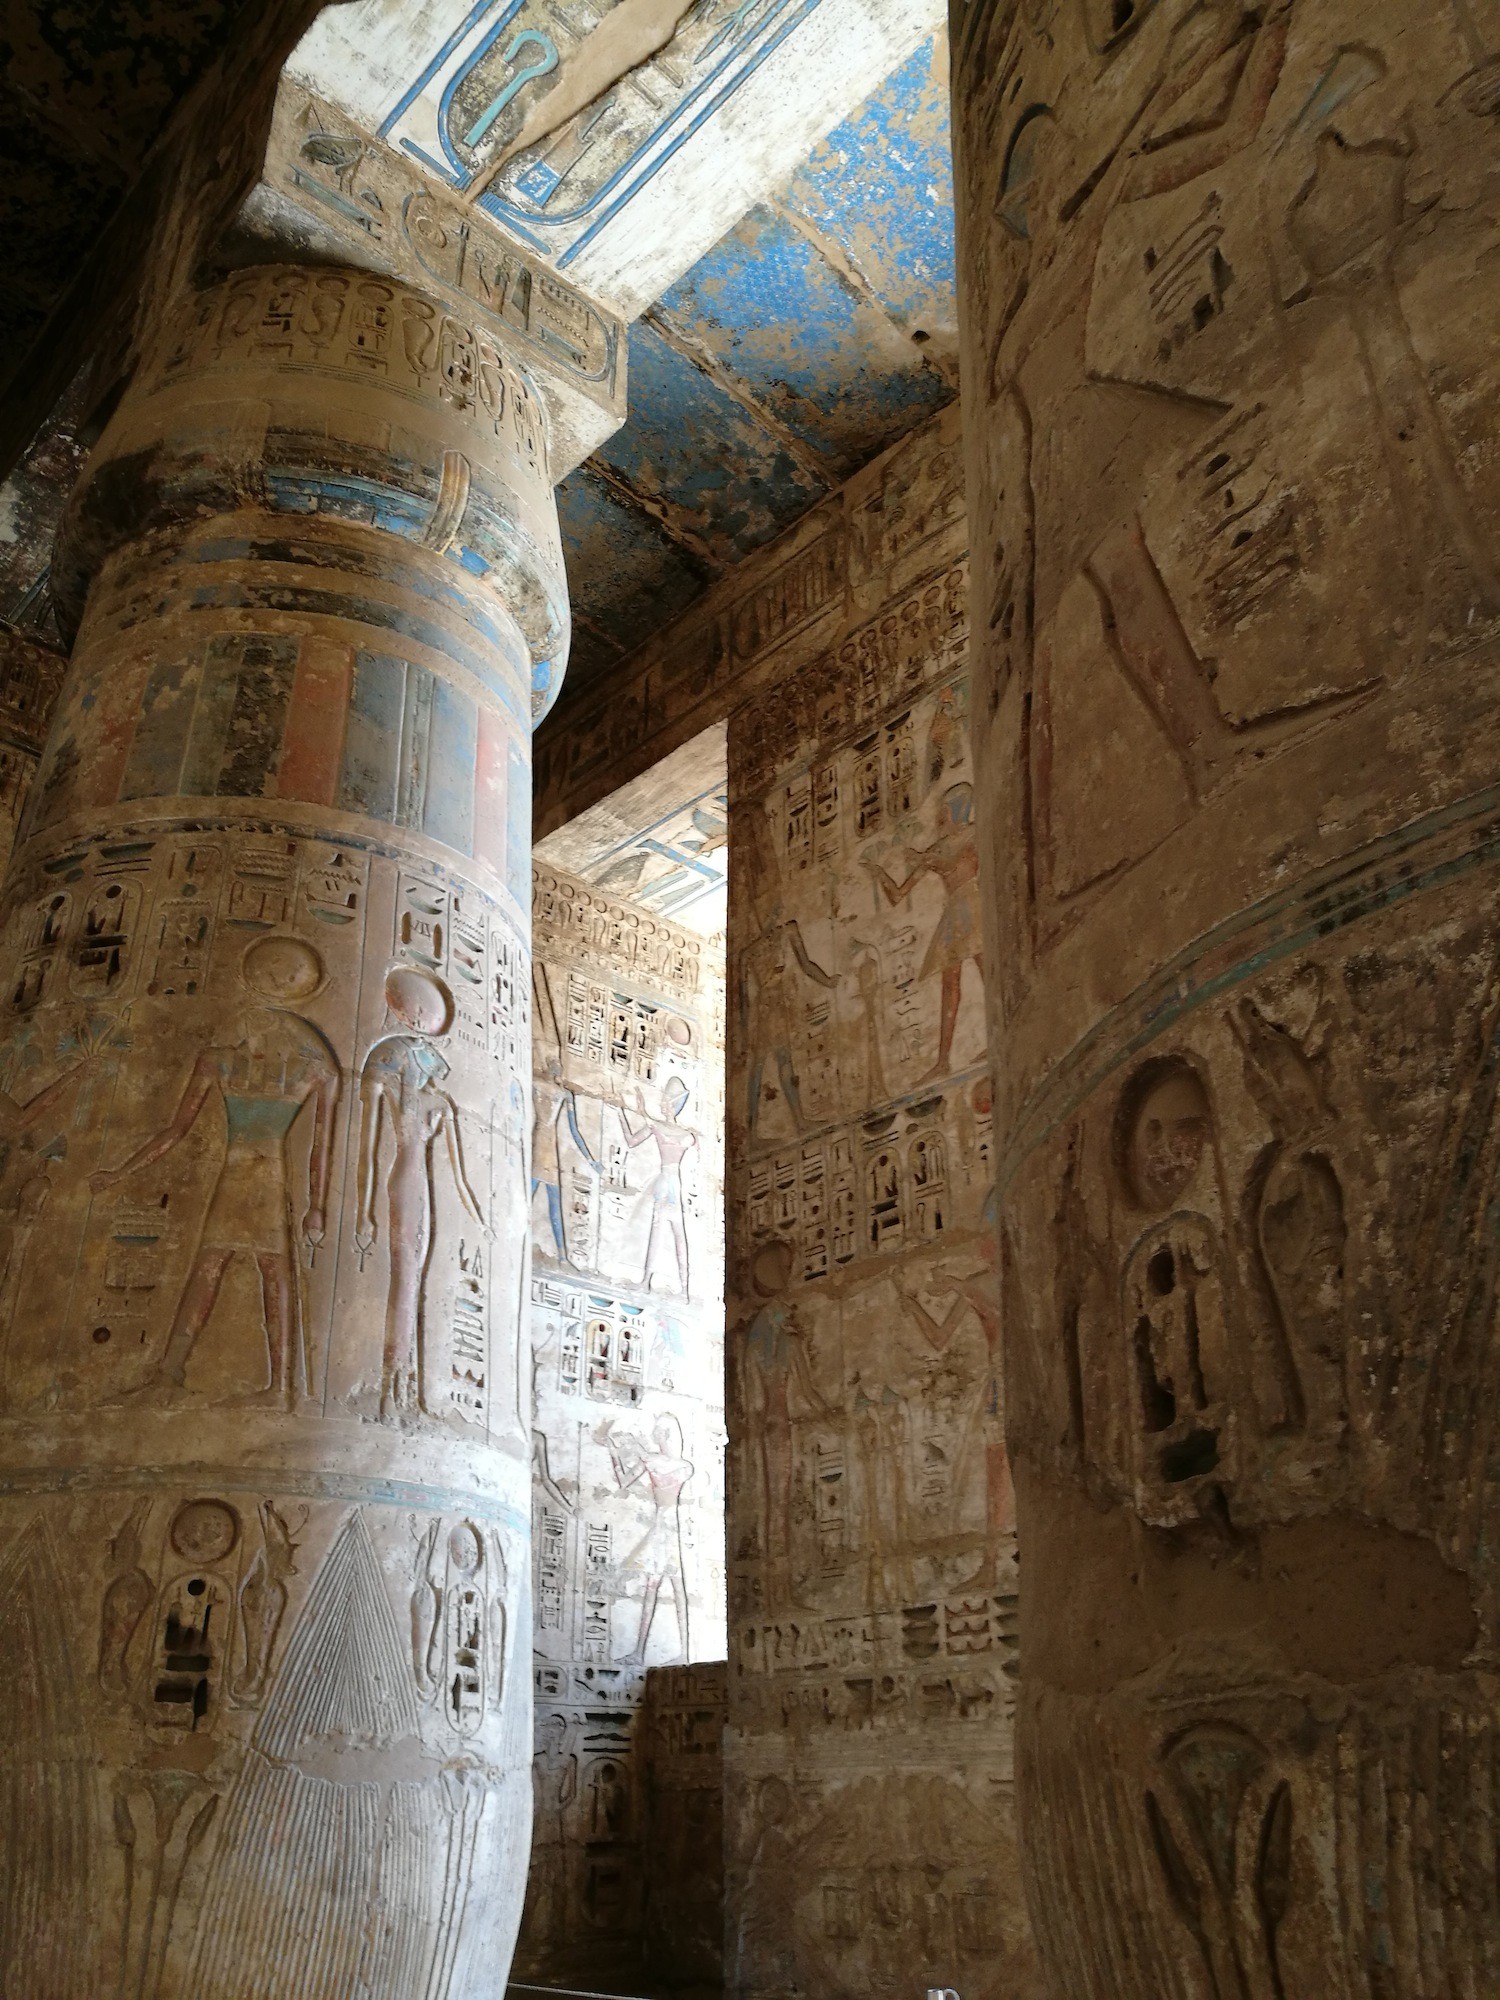 柱子上的有些雕刻非常深，应该是刻意的，一些颜色还保存至今，真的不易。据我所知，这里不是颜色保留最完整的古埃及建筑，还有更美的。